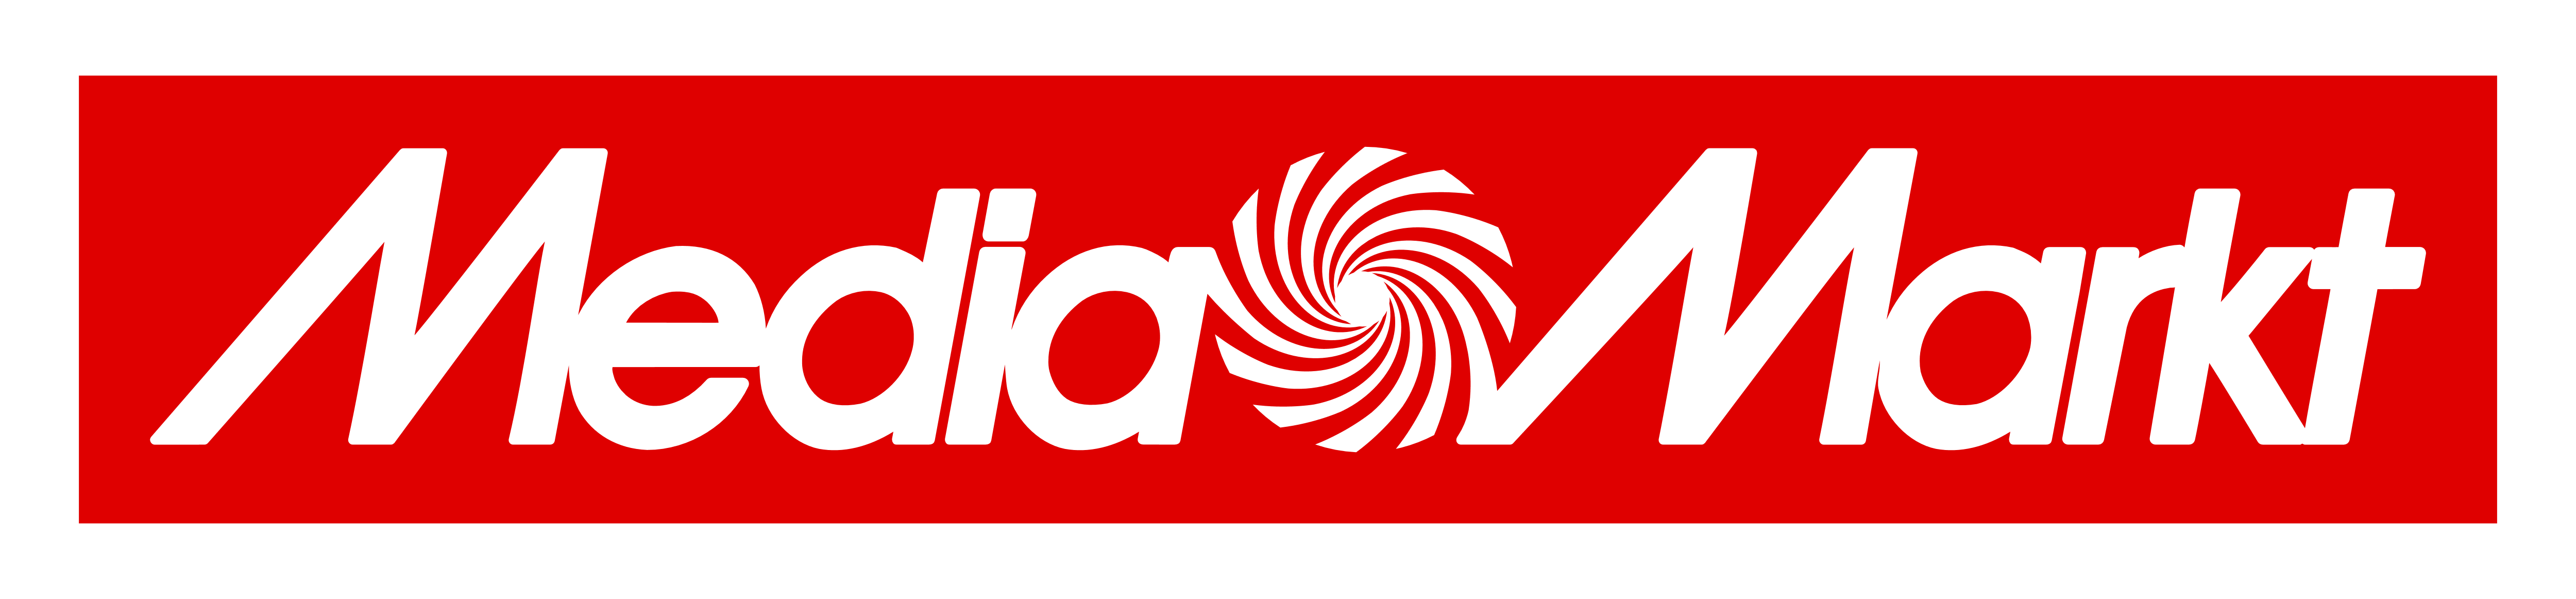 Media Markt Logo Vector ~ For